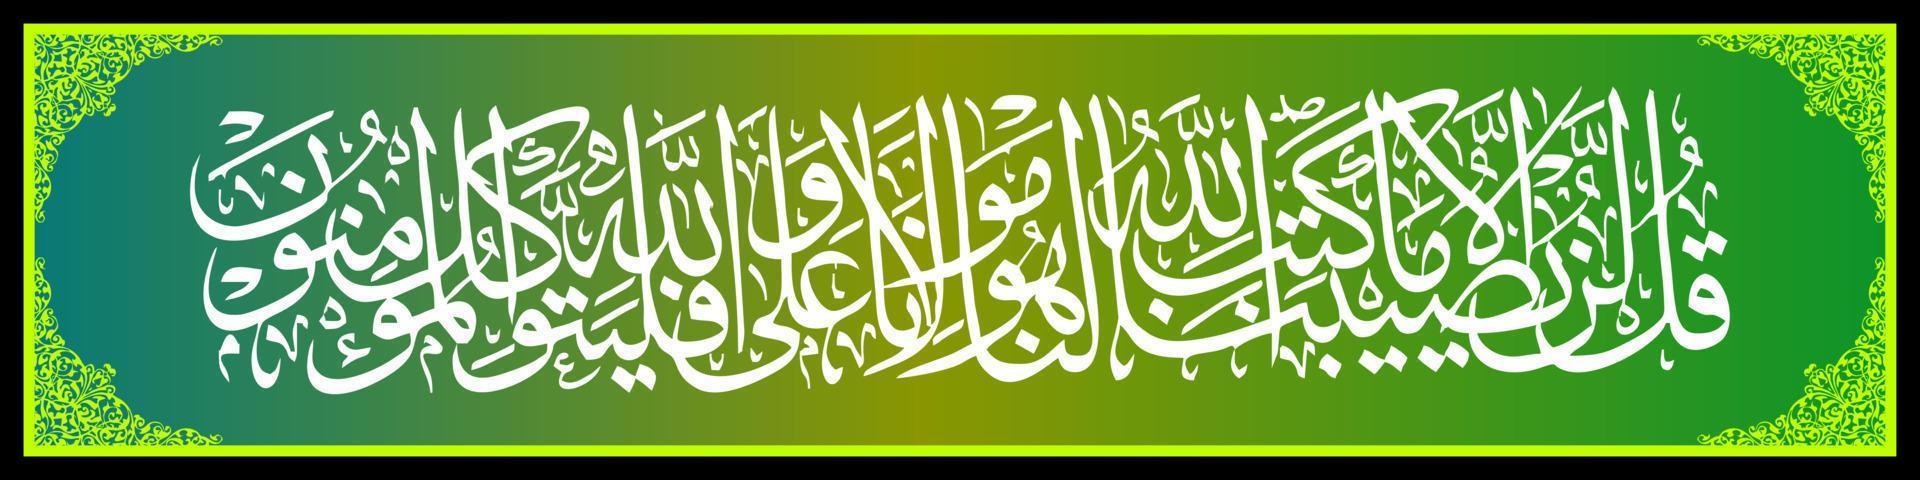 arabische Kalligraphie al quran surah attaubah 51, übersetzung sagen sie muhammad, nichts wird uns passieren, außer was allah für uns bestimmt hat. Er ist unser Beschützer, vektor